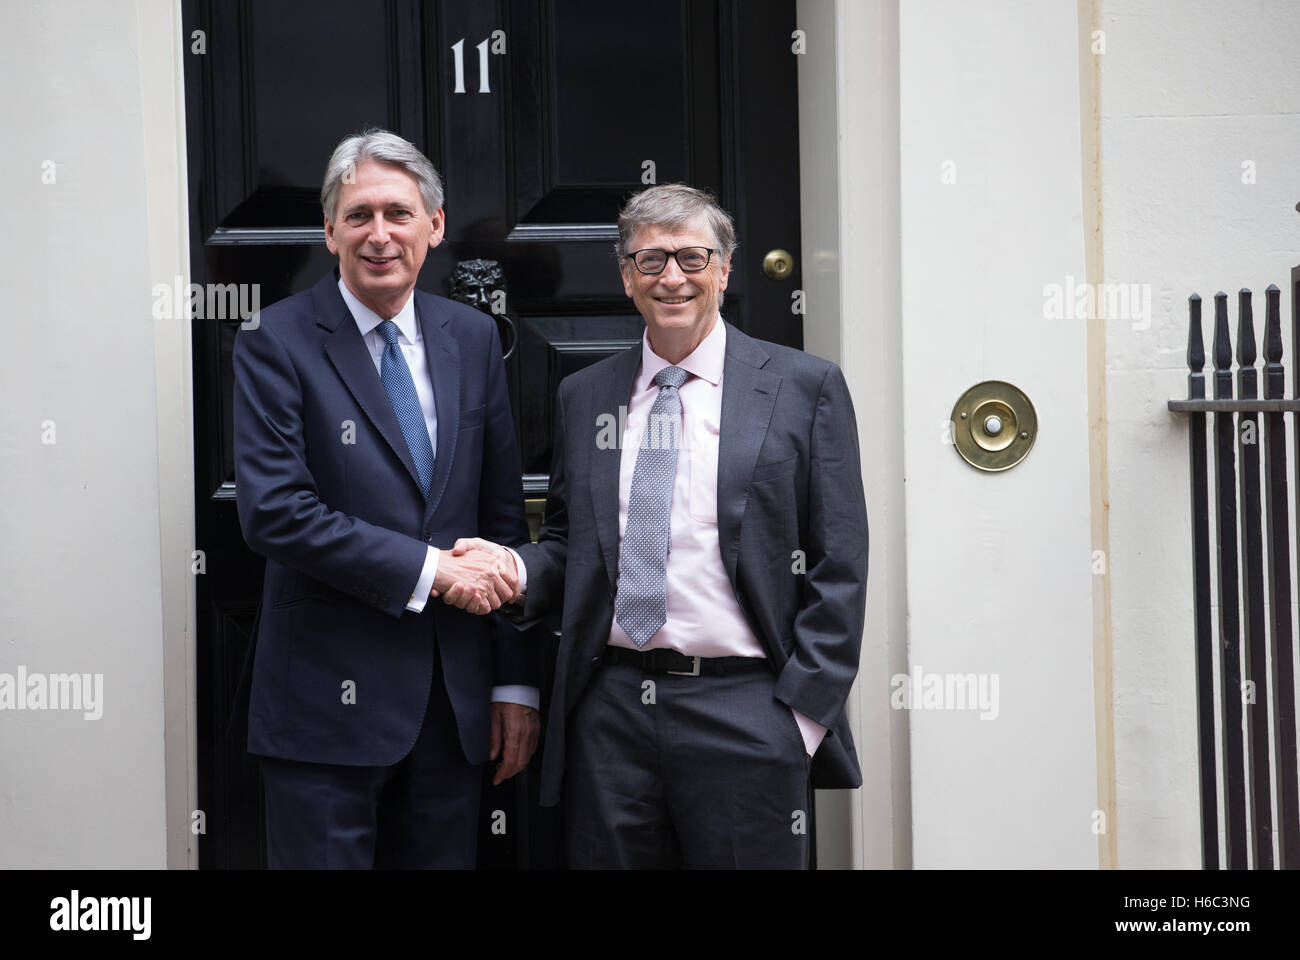 Chancelier de l'Échiquier,Phillip Hammond et milliardaire,Bill Gates,serrer la main sur l'étape de 11 Downing Street,London Banque D'Images